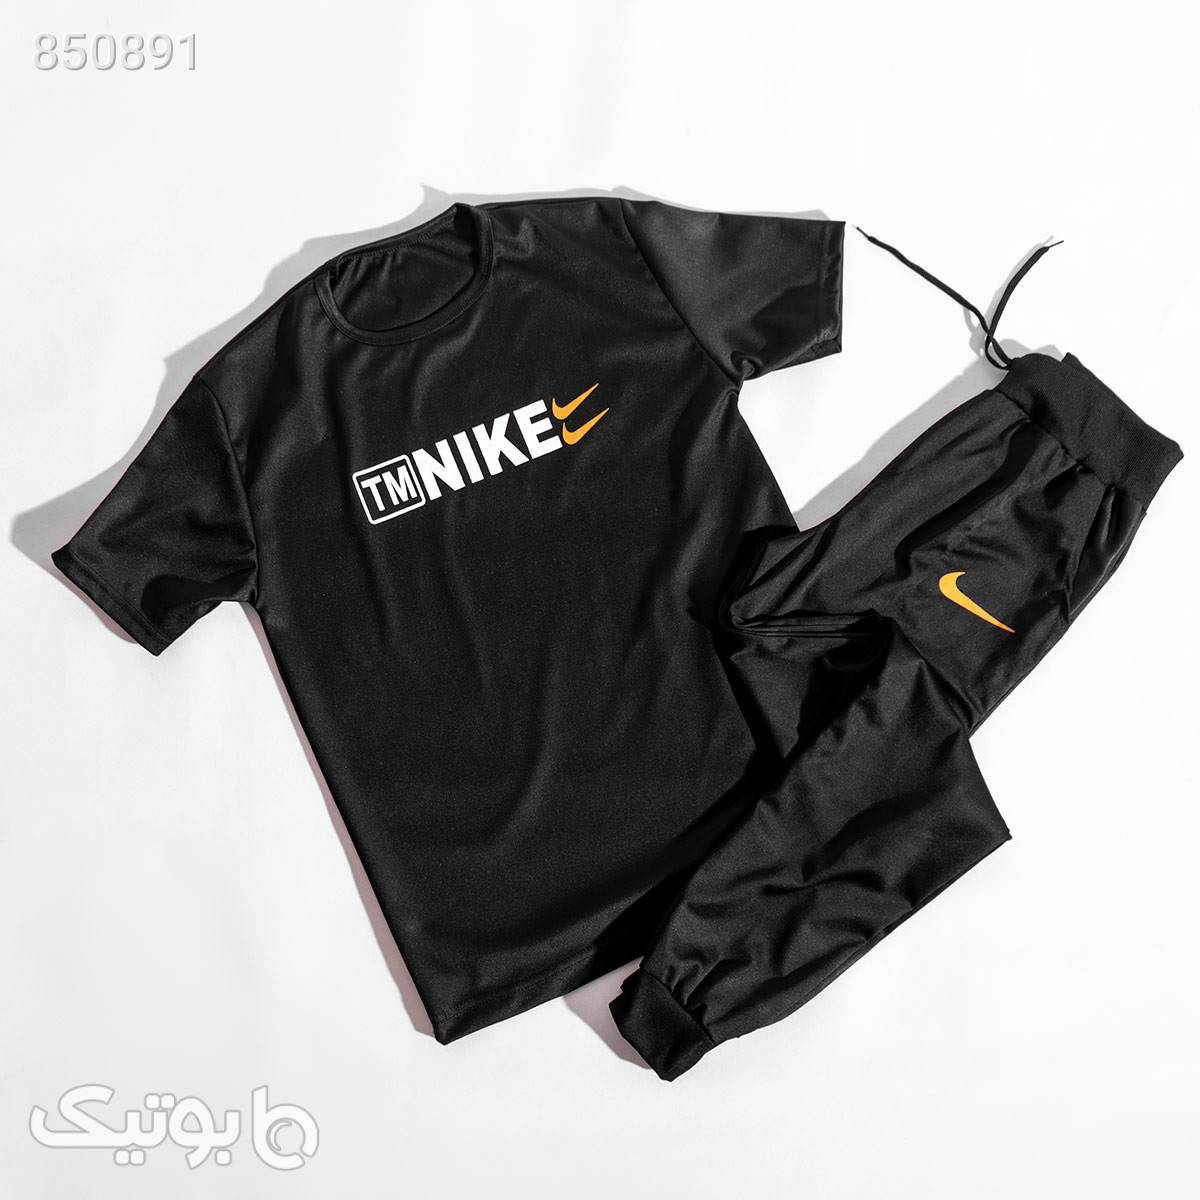 ست تیشرت شلوار Nikeمردانه مدلHiro مشکی لباس راحتی مردانه